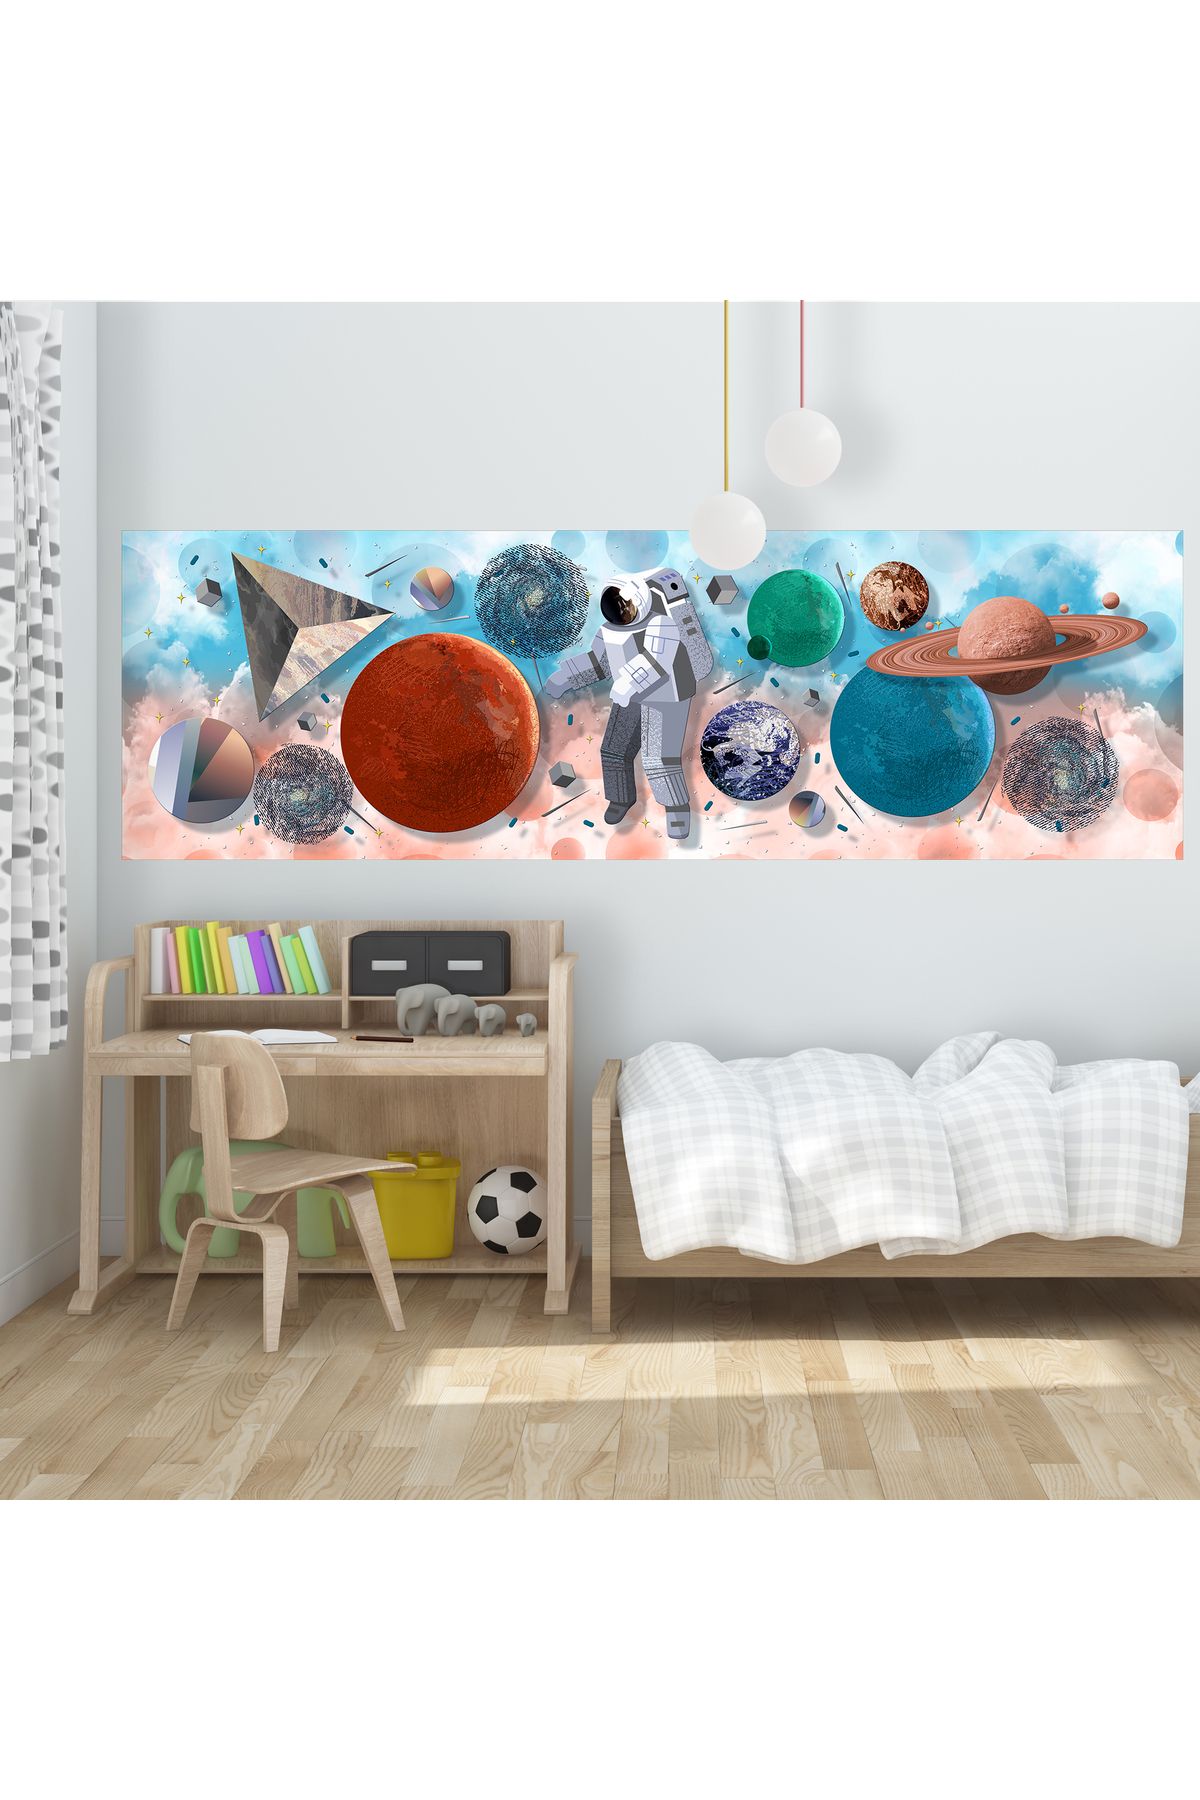 dreamwall Çocuk Odası Astronot Ve Galaksi Desenli Tek Parça Kumaş Duvar Sticker(Gen:144 Yüksek:44)